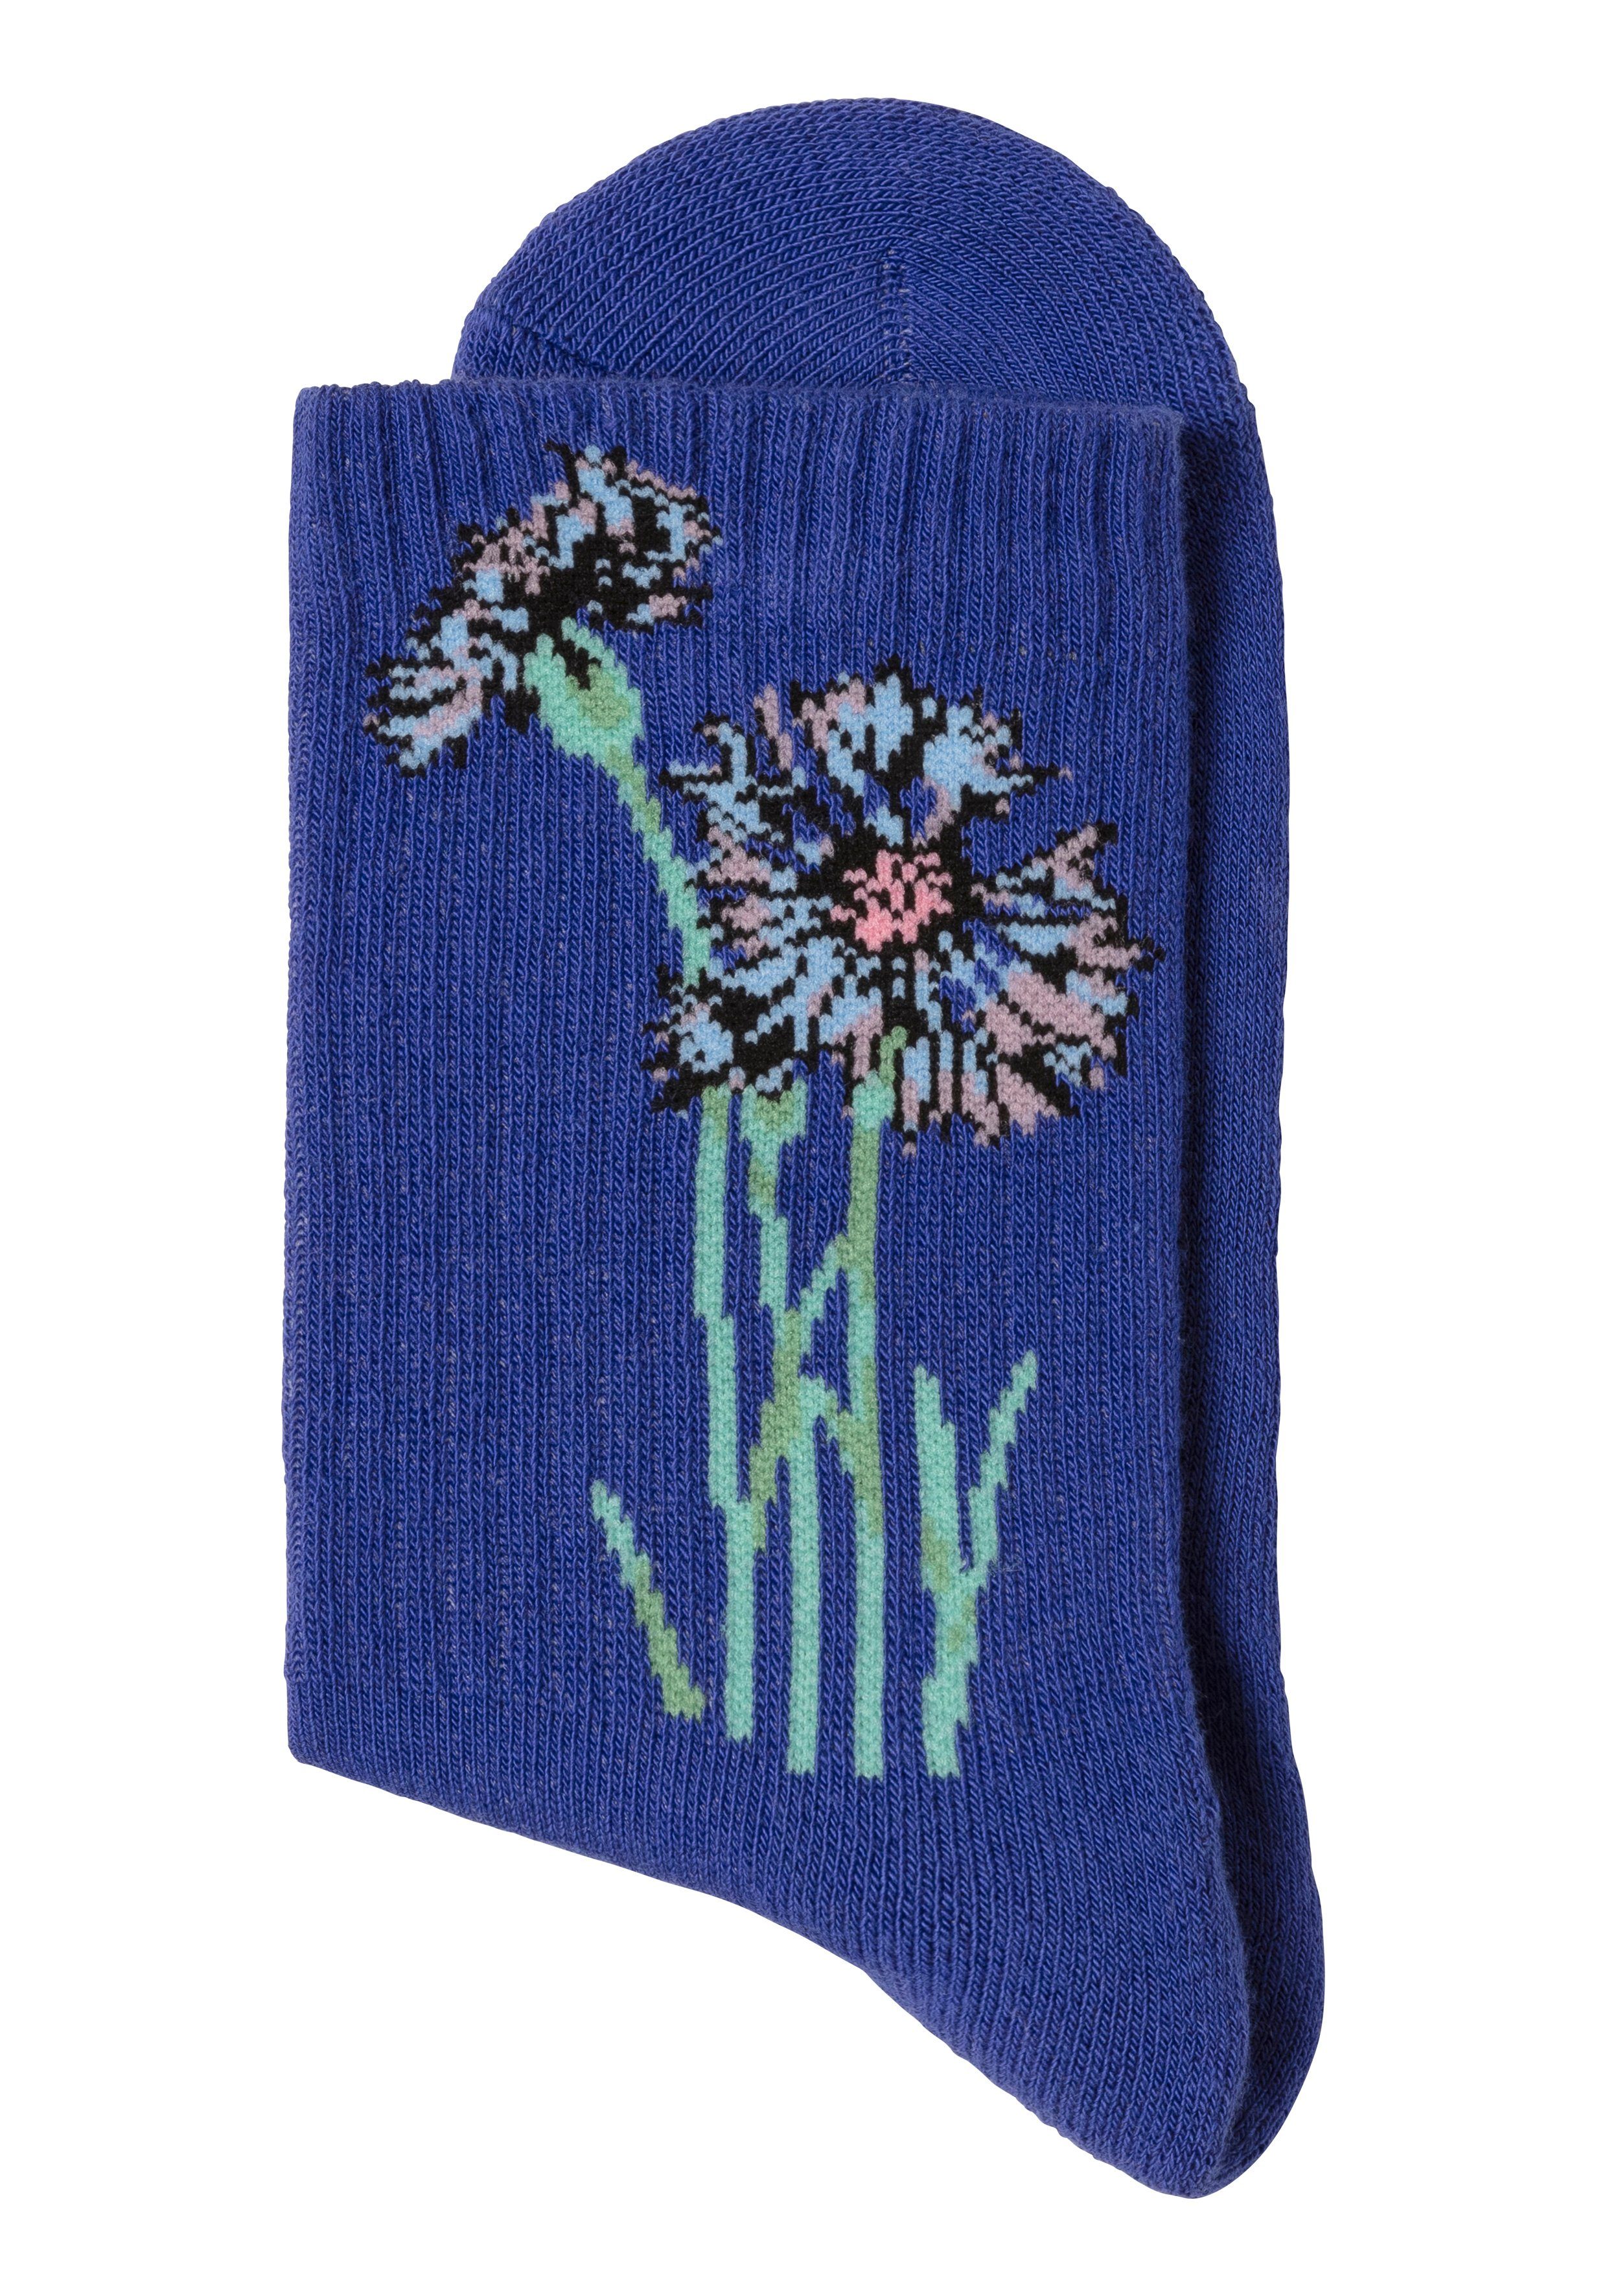 LASCANA Basicsocken (Packung, royalblau eingestrickten mit 1x Motiven Blumen hellbeige-melange, 1x 4-Paar) 1x jeans-meliert, 1x ecru